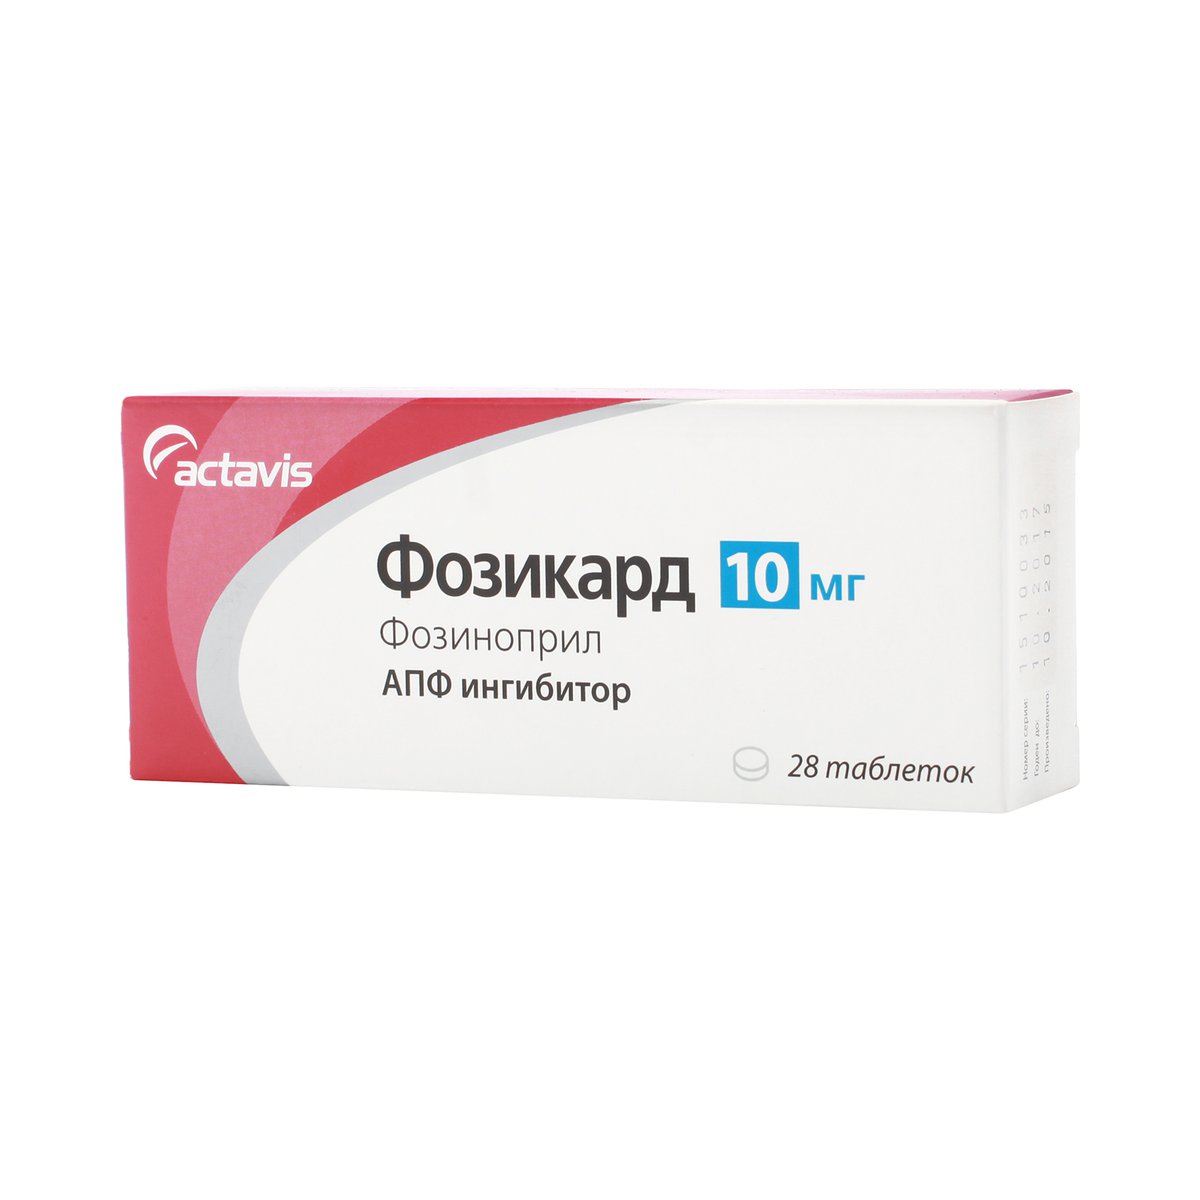 Фозикард (таблетки, 28 шт, 10 мг) - цена,  онлайн  .